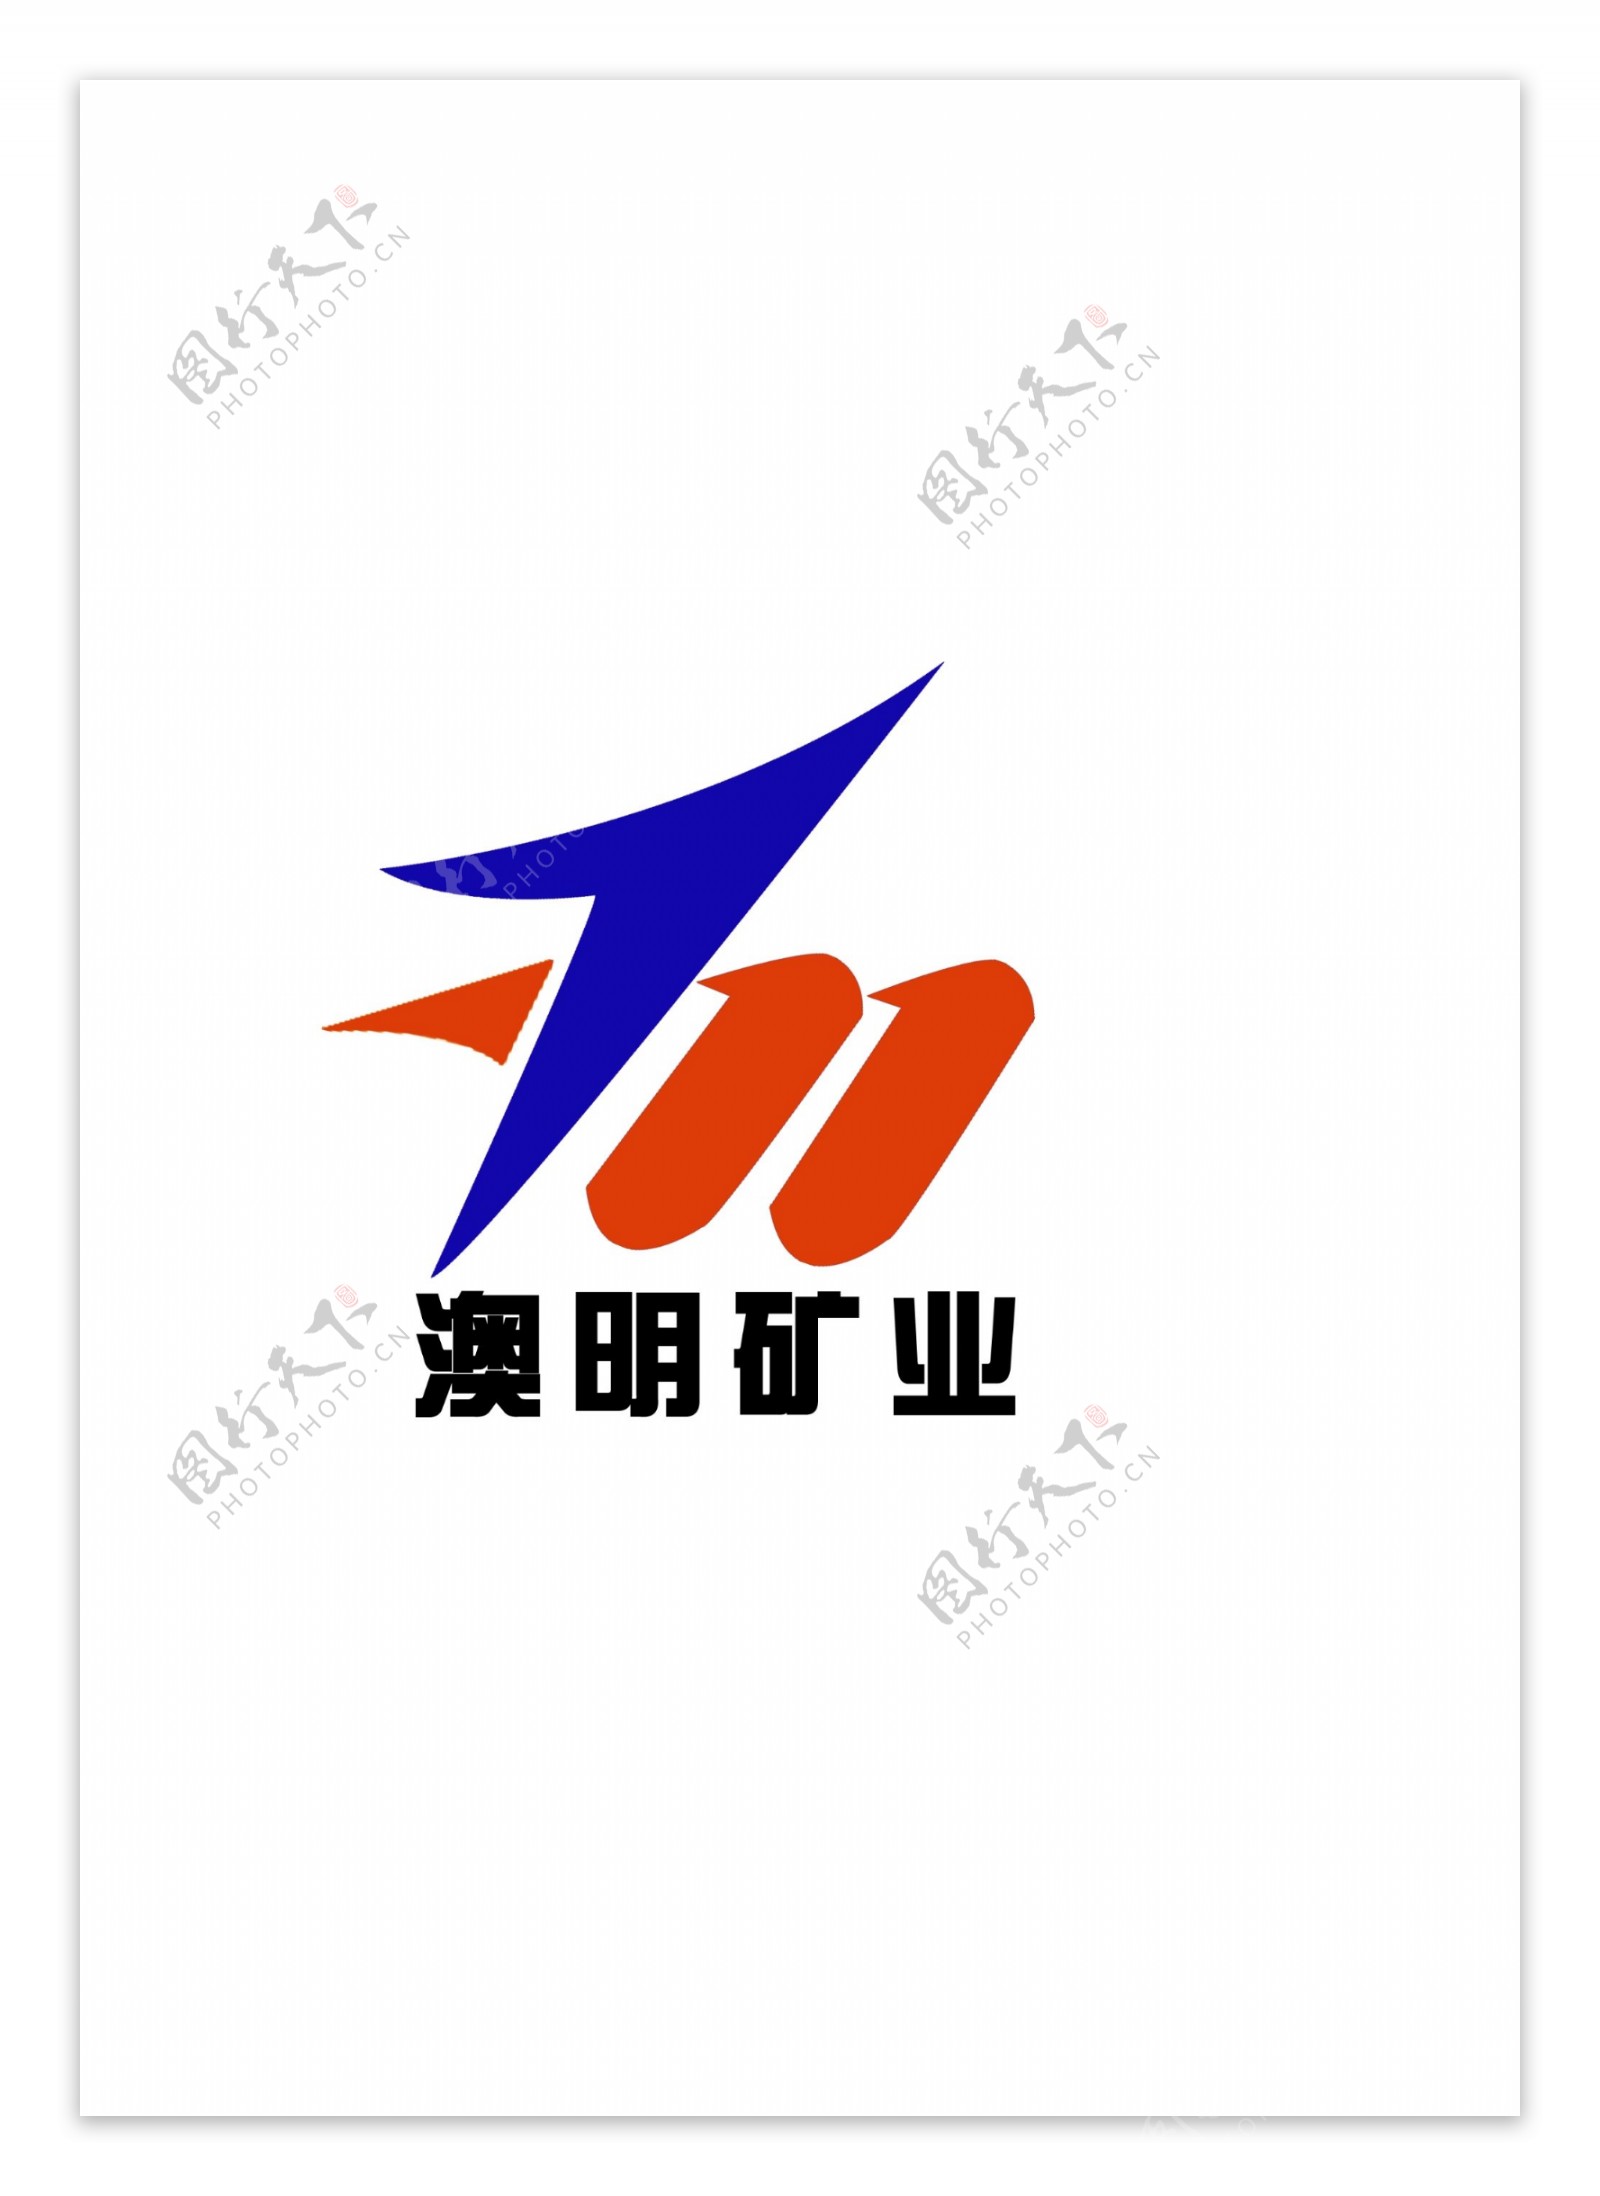 澳明矿业logo图片